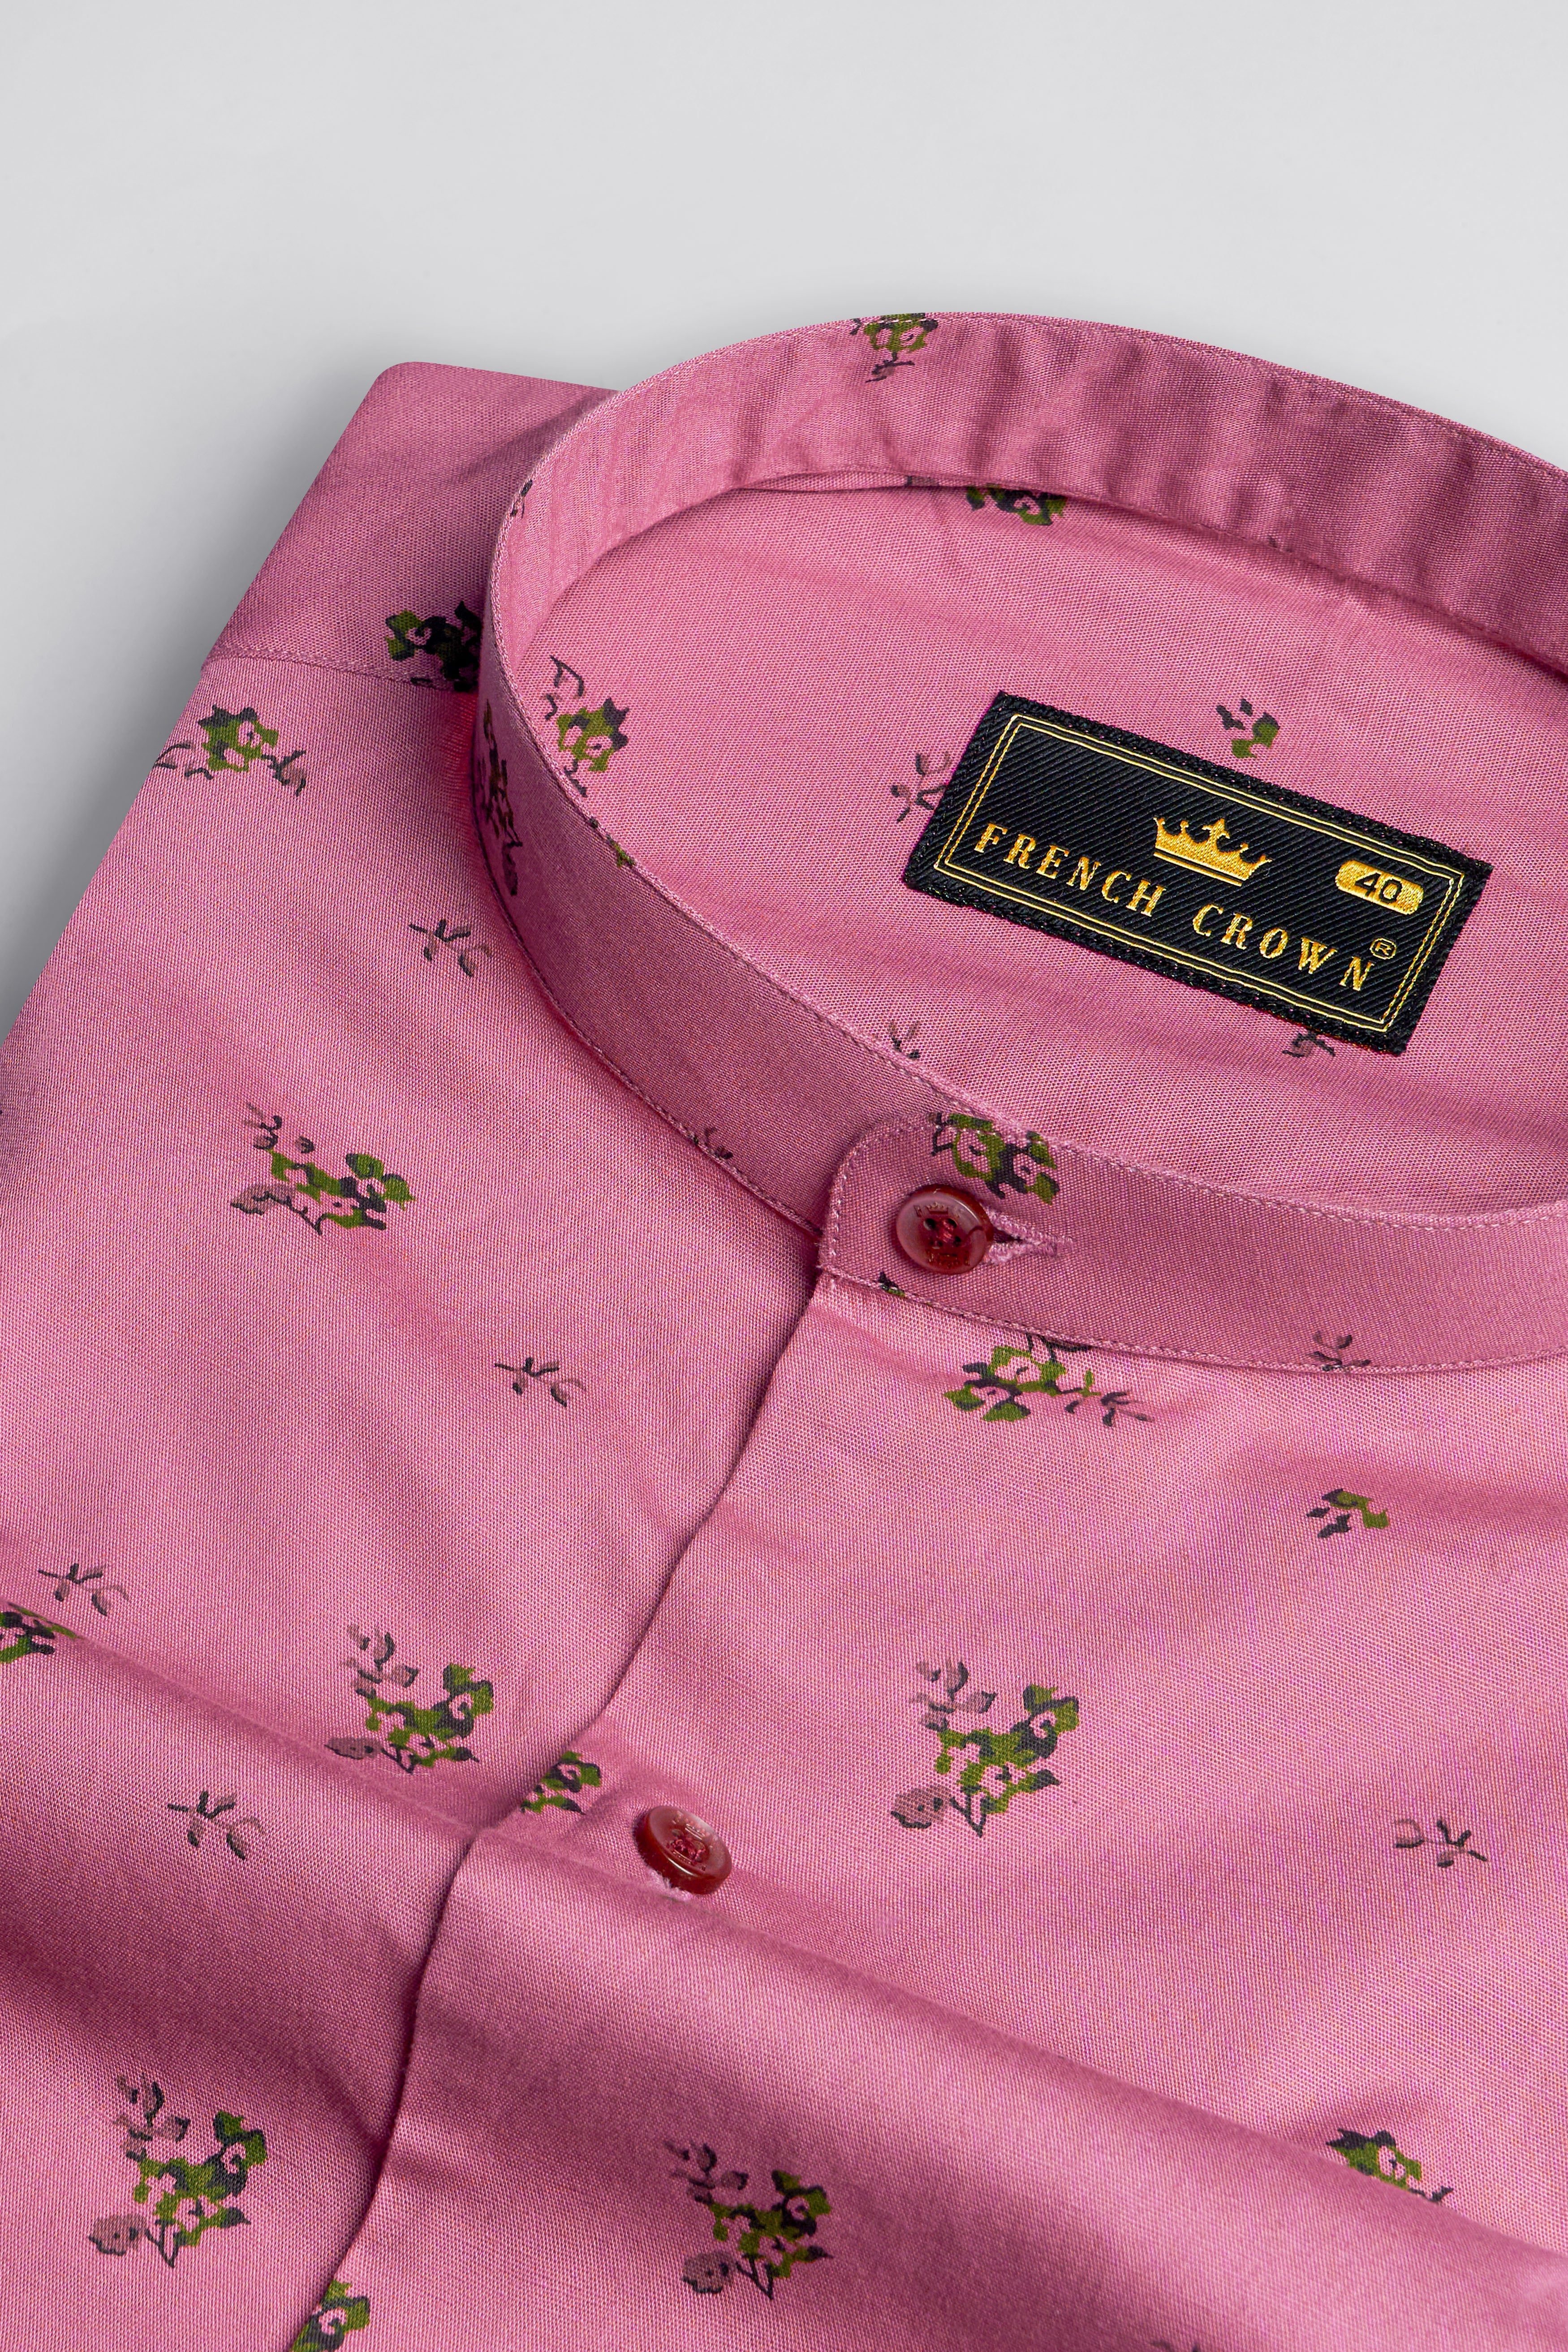 Thulian Pink Floral Printed Royal Oxford Shirt